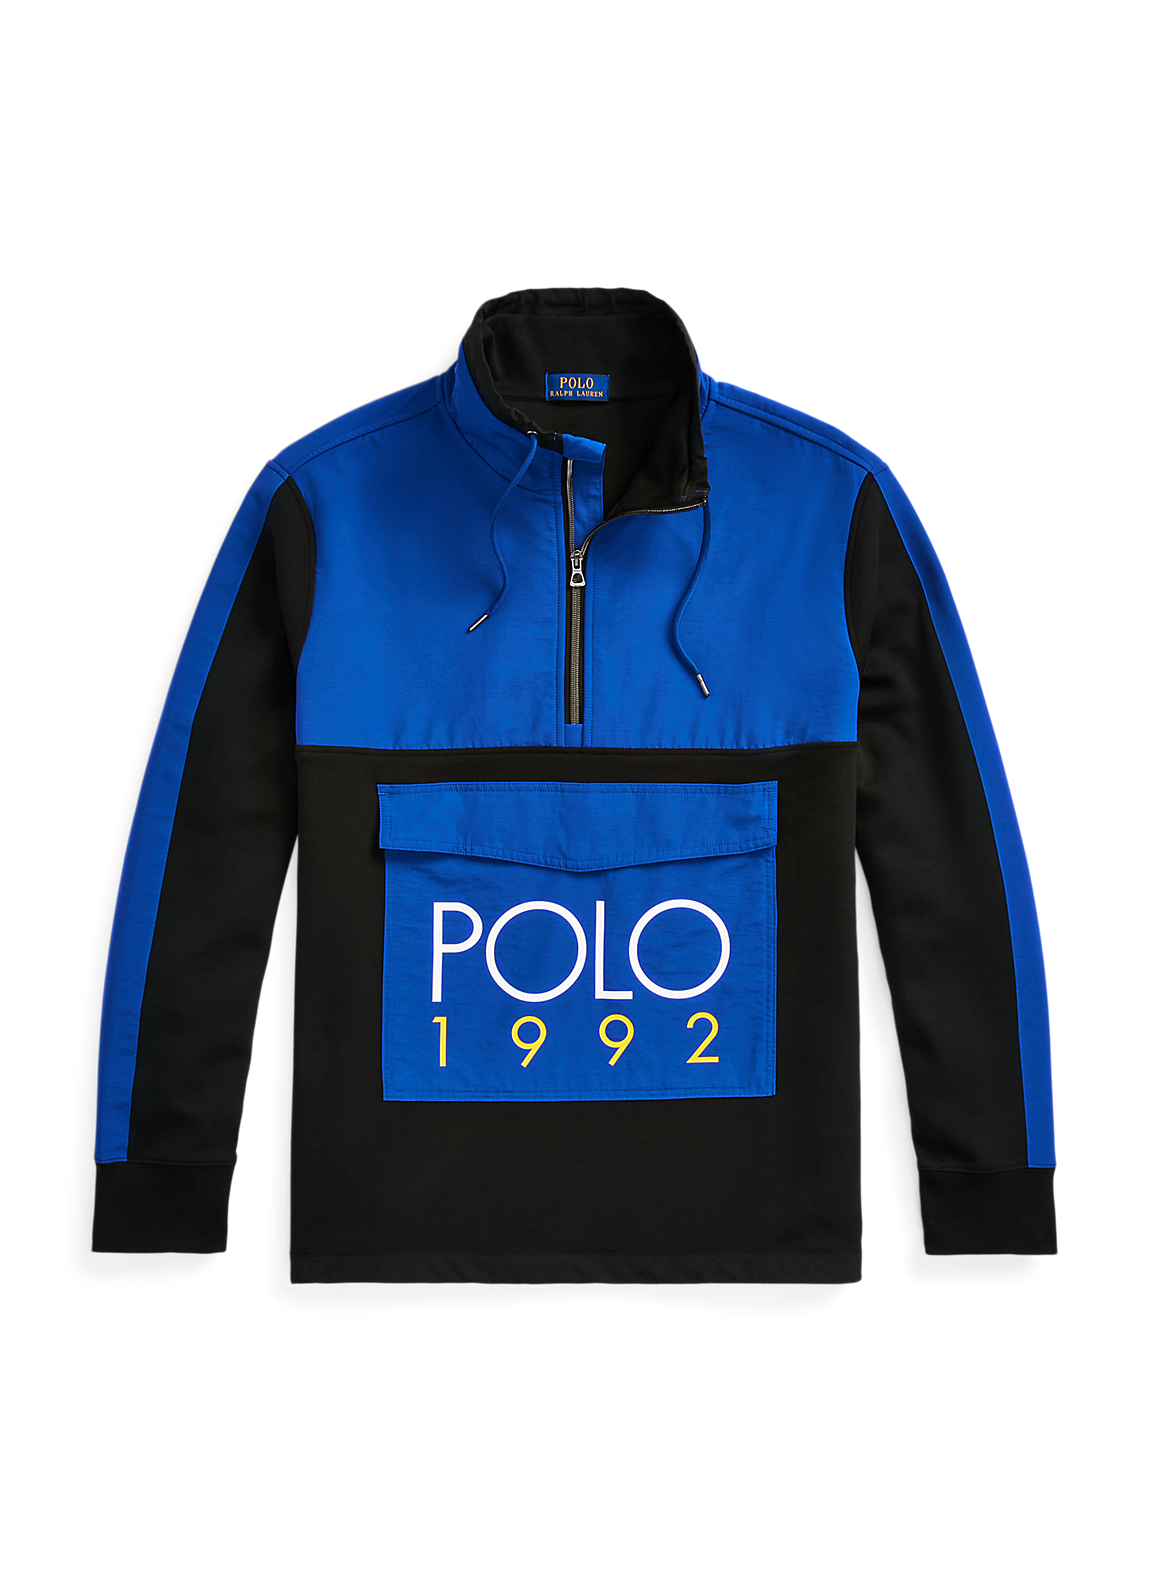 Polo 1992 ハイブリッド プルオーバー